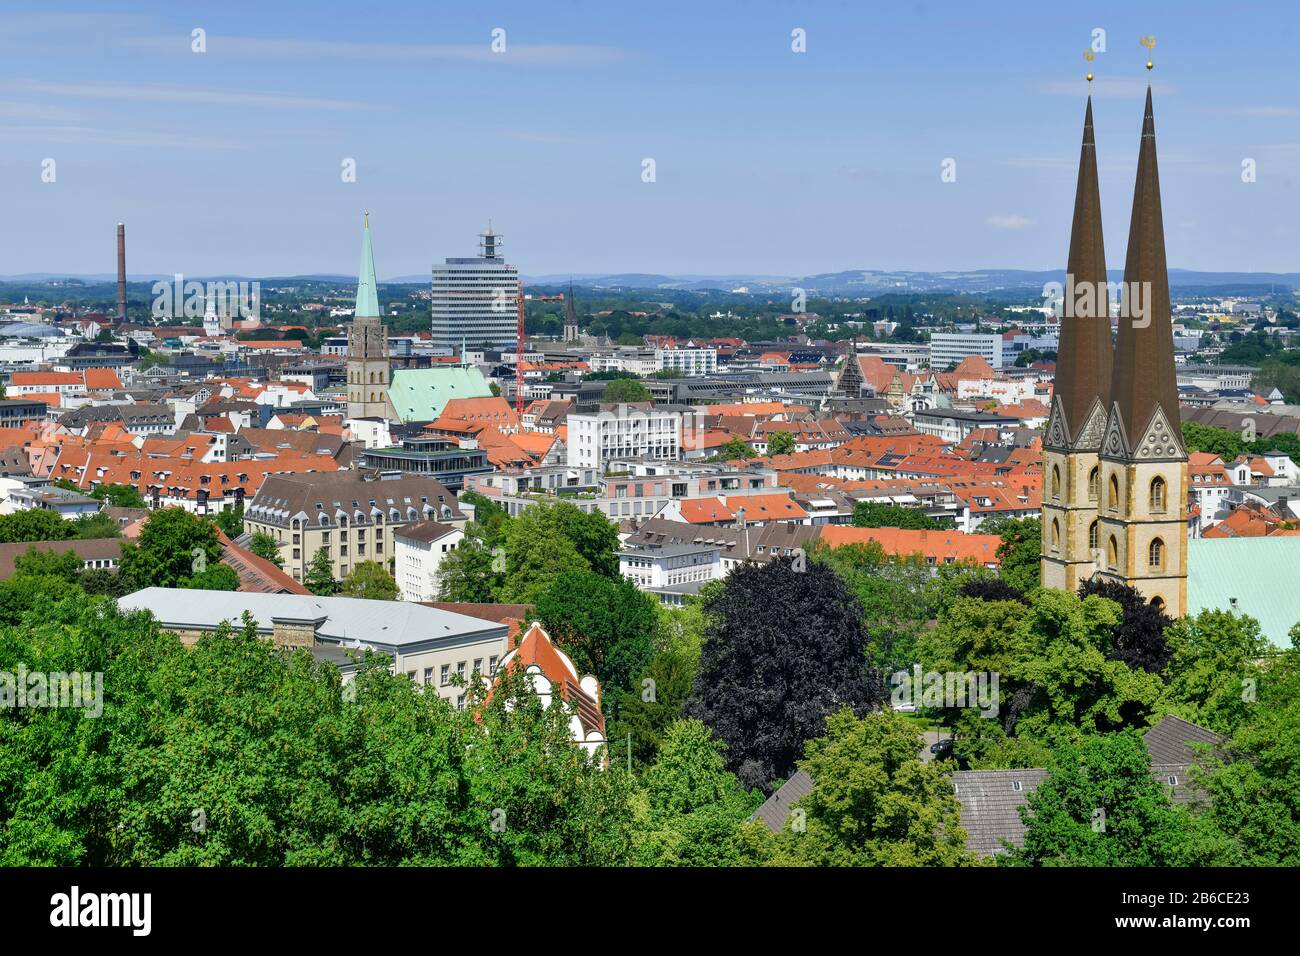 Stadtpanorama, Bielefeld, Nordrhein-Westfalen, Deutschland Stock Photo